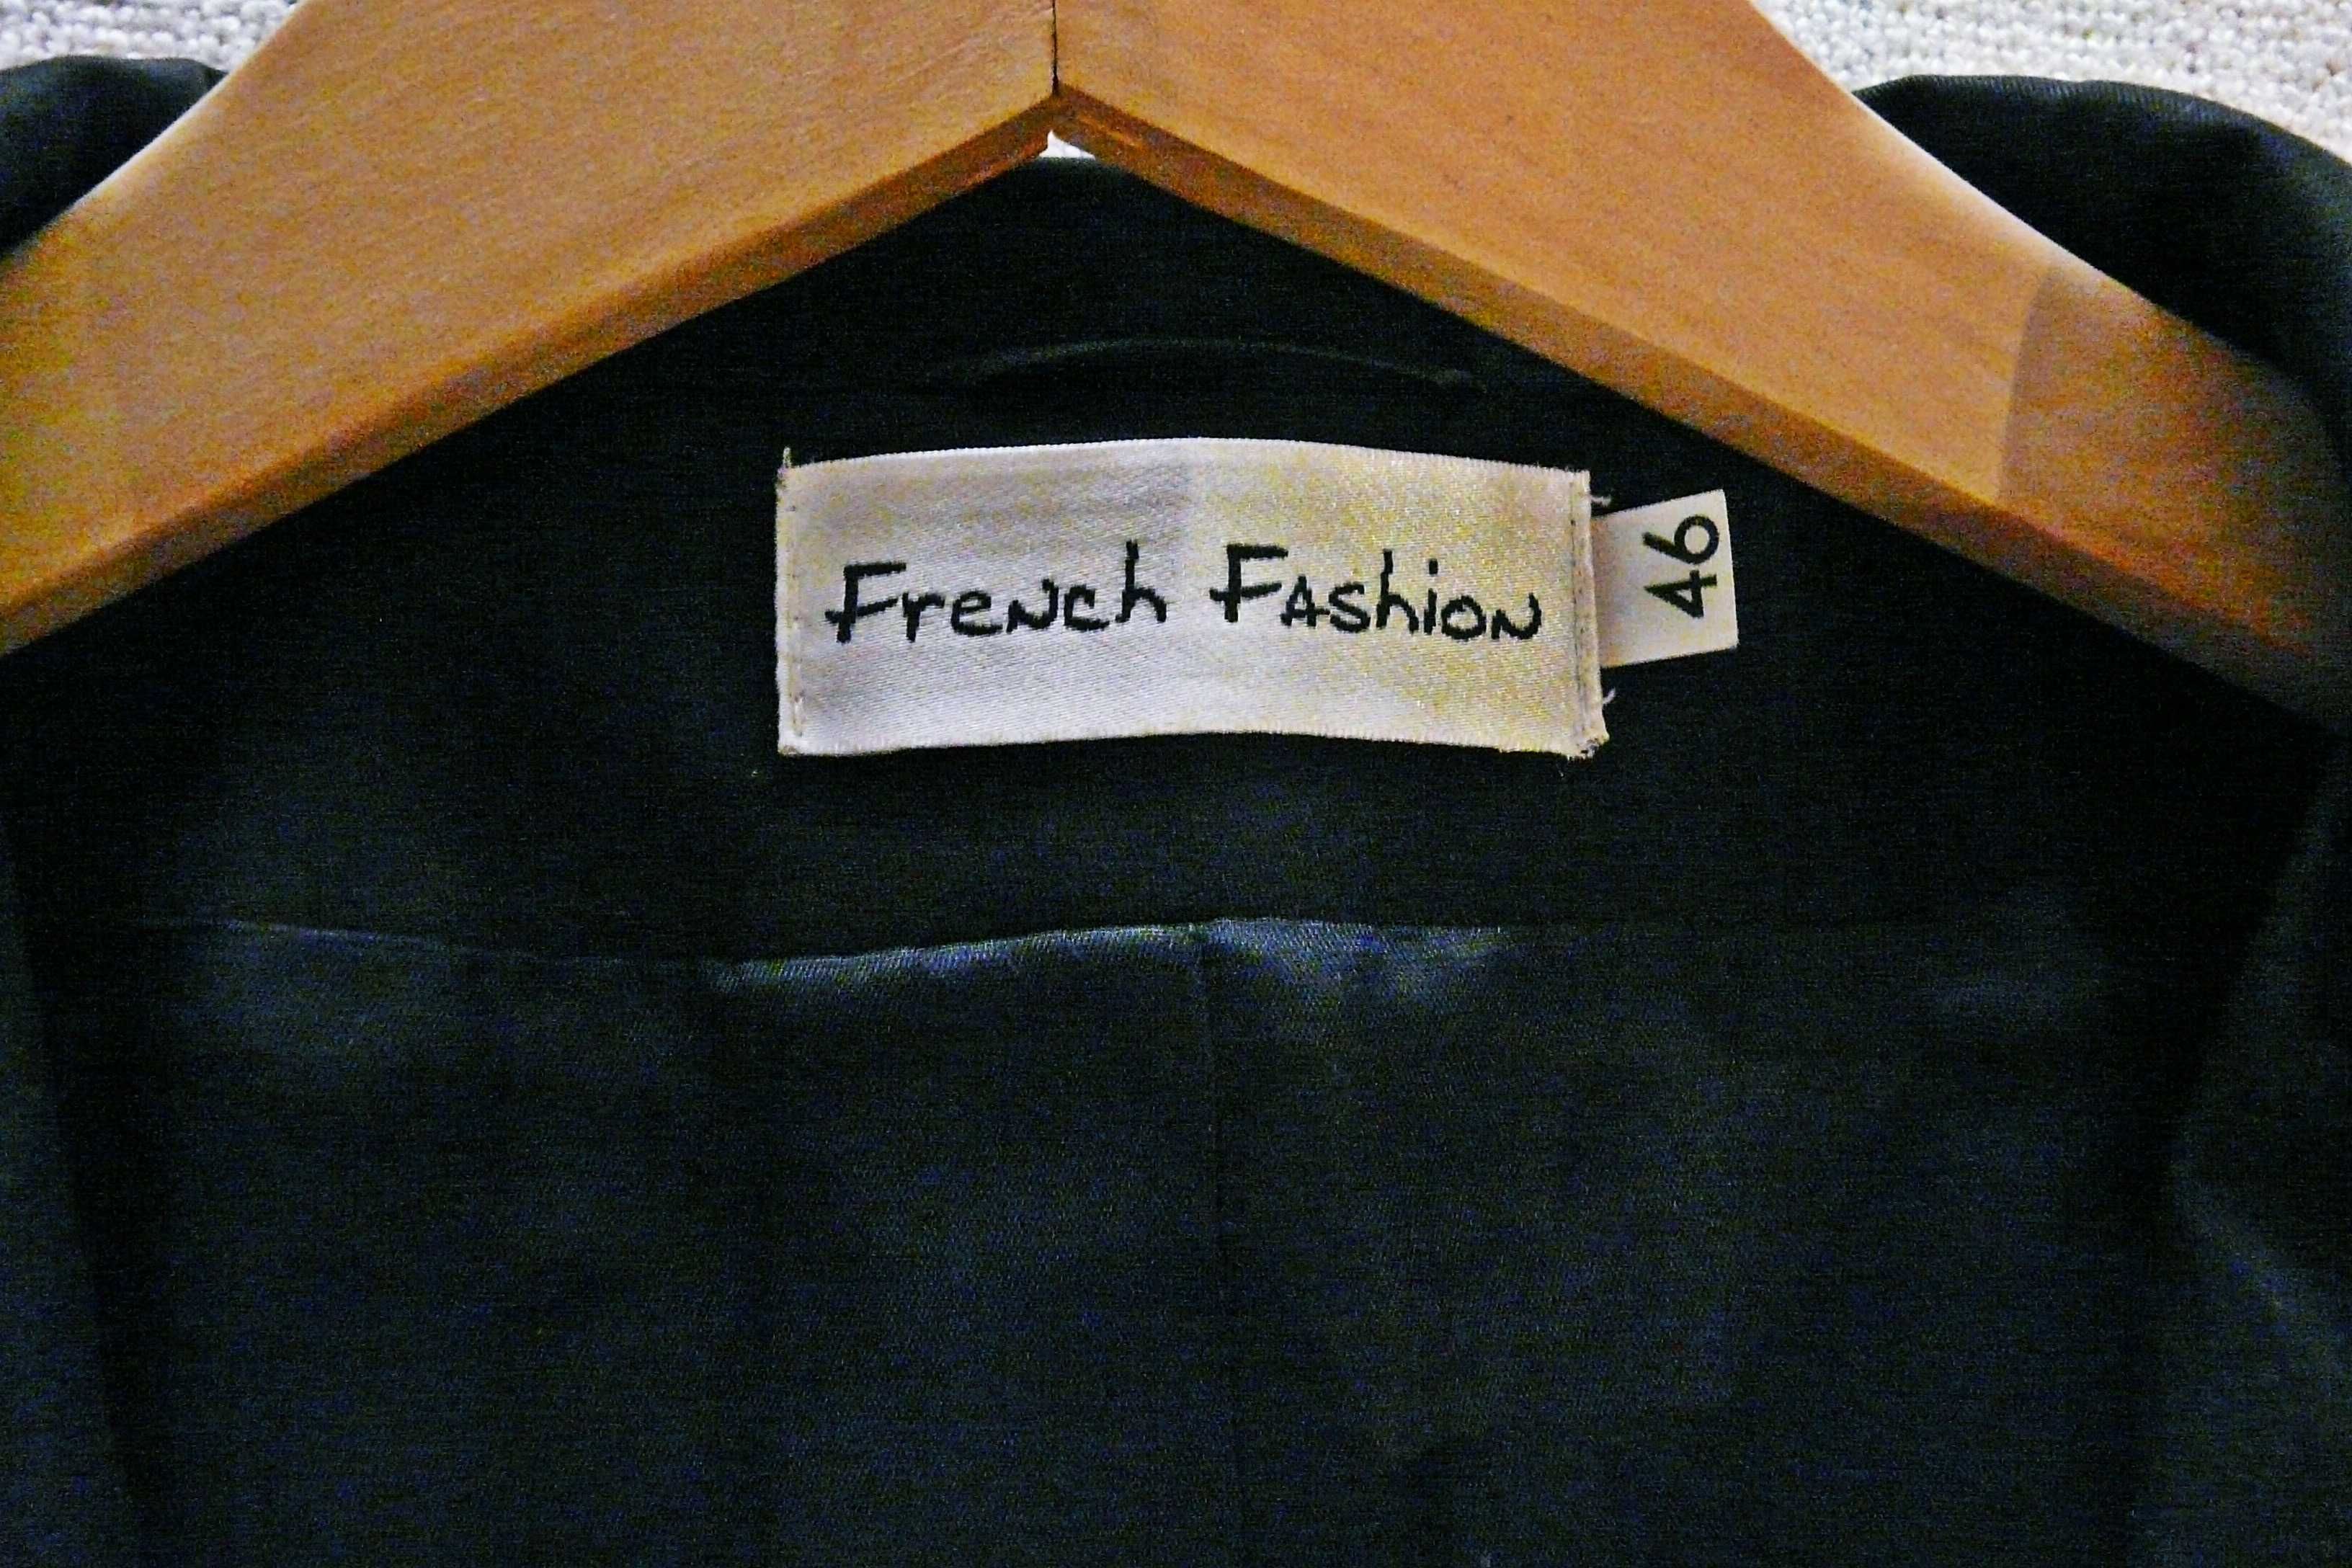 Marynarka wizytowa French Fashion, atłasowa, czarna, r. 46.